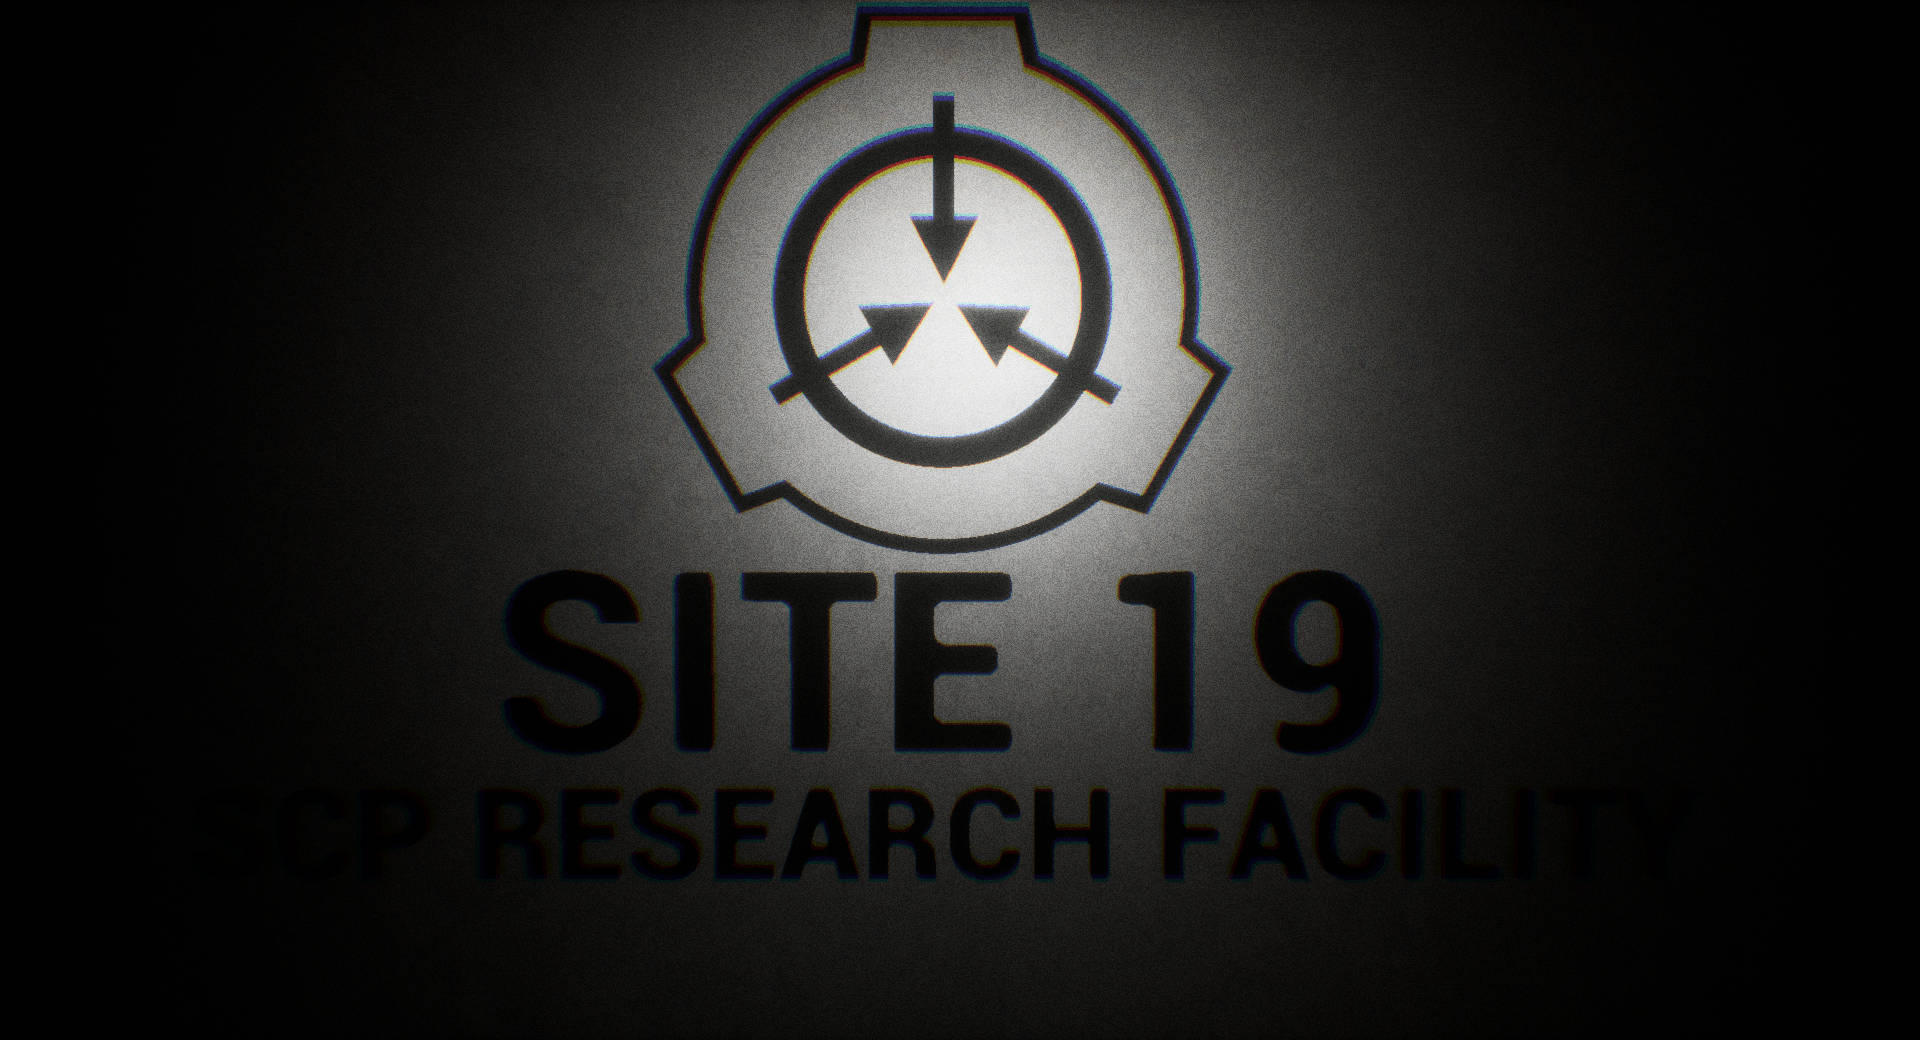 Scp Logo In Dark Vignette Background